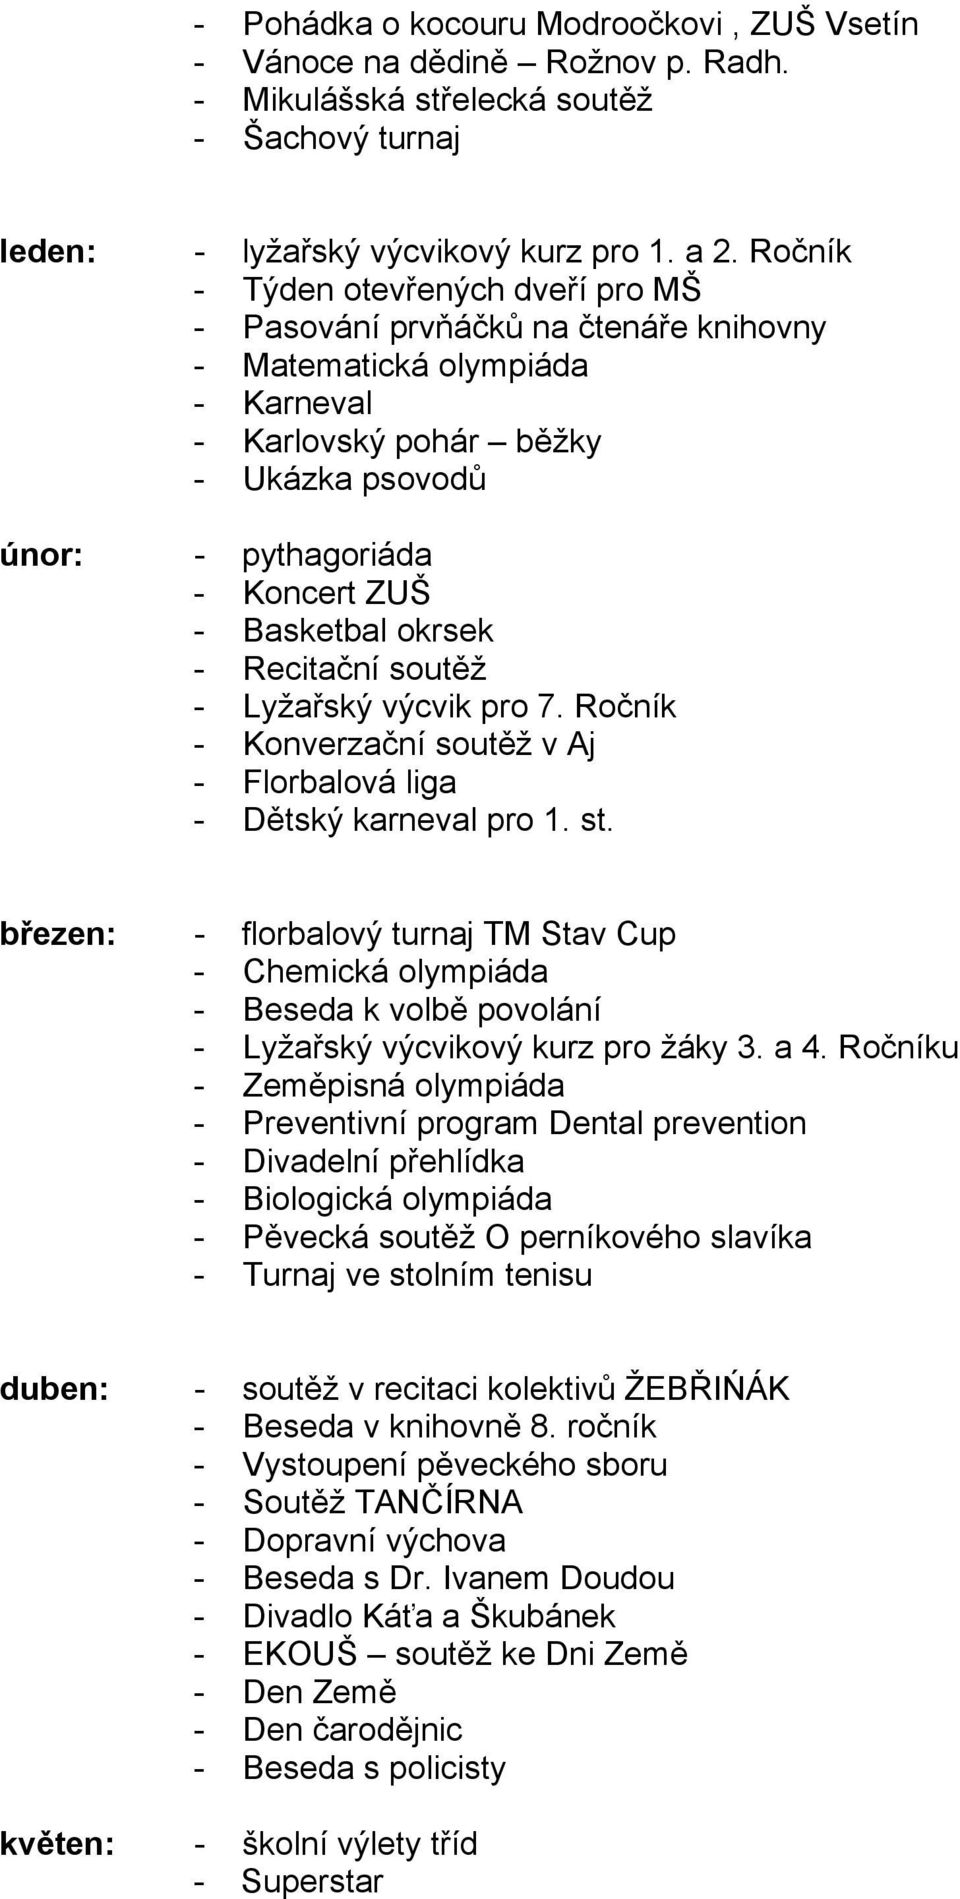 Basketbal okrsek - Recitační soutěž - Lyžařský výcvik pro 7. Ročník - Konverzační soutěž v Aj - Florbalová liga - Dětský karneval pro 1. st.